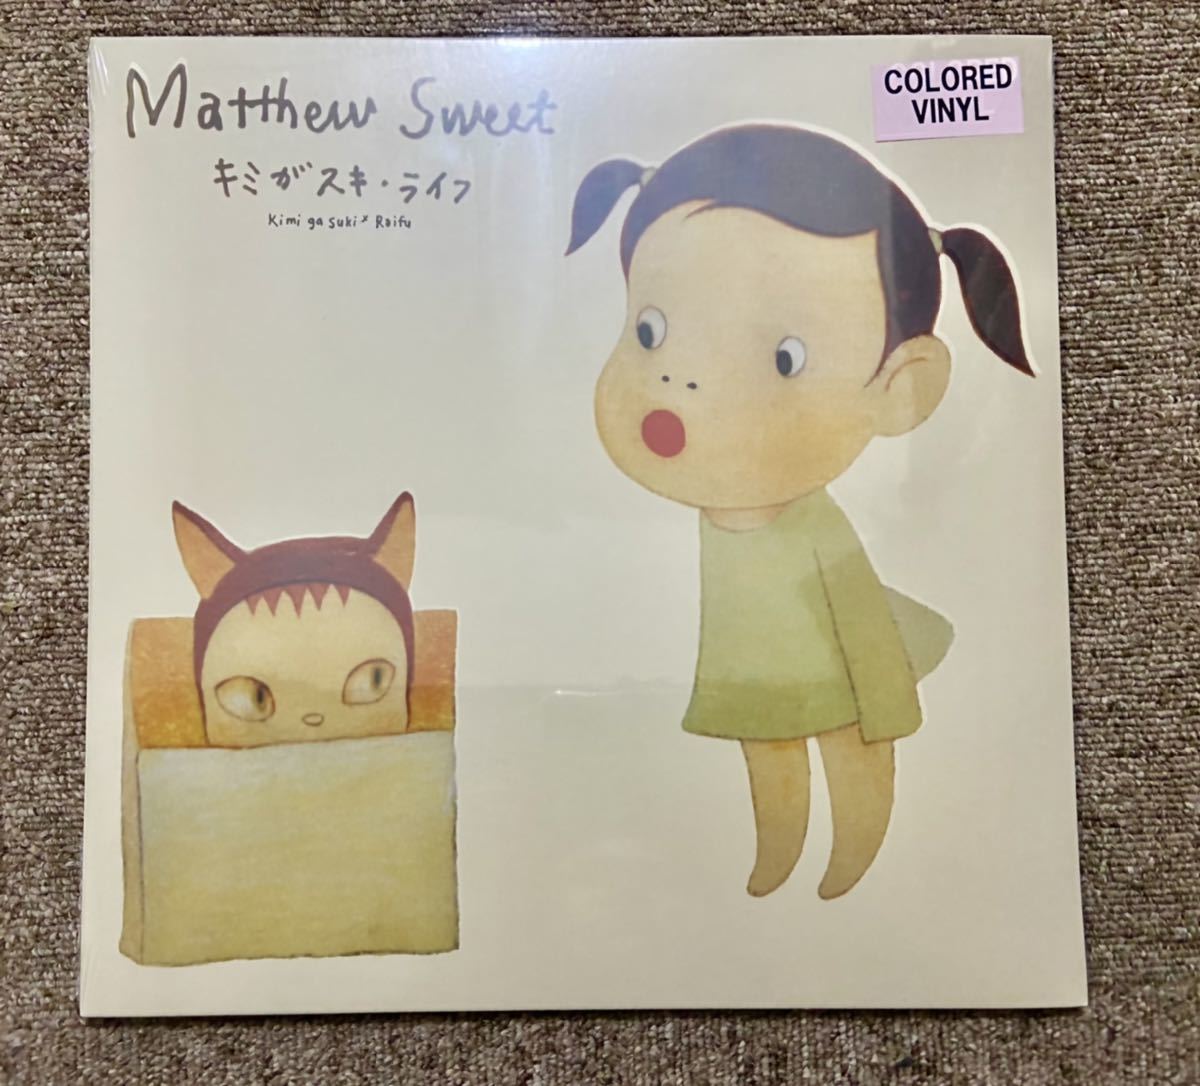 激安超特価 キミがスキ ライフ LP Matthew Sweet ecousarecycling.com